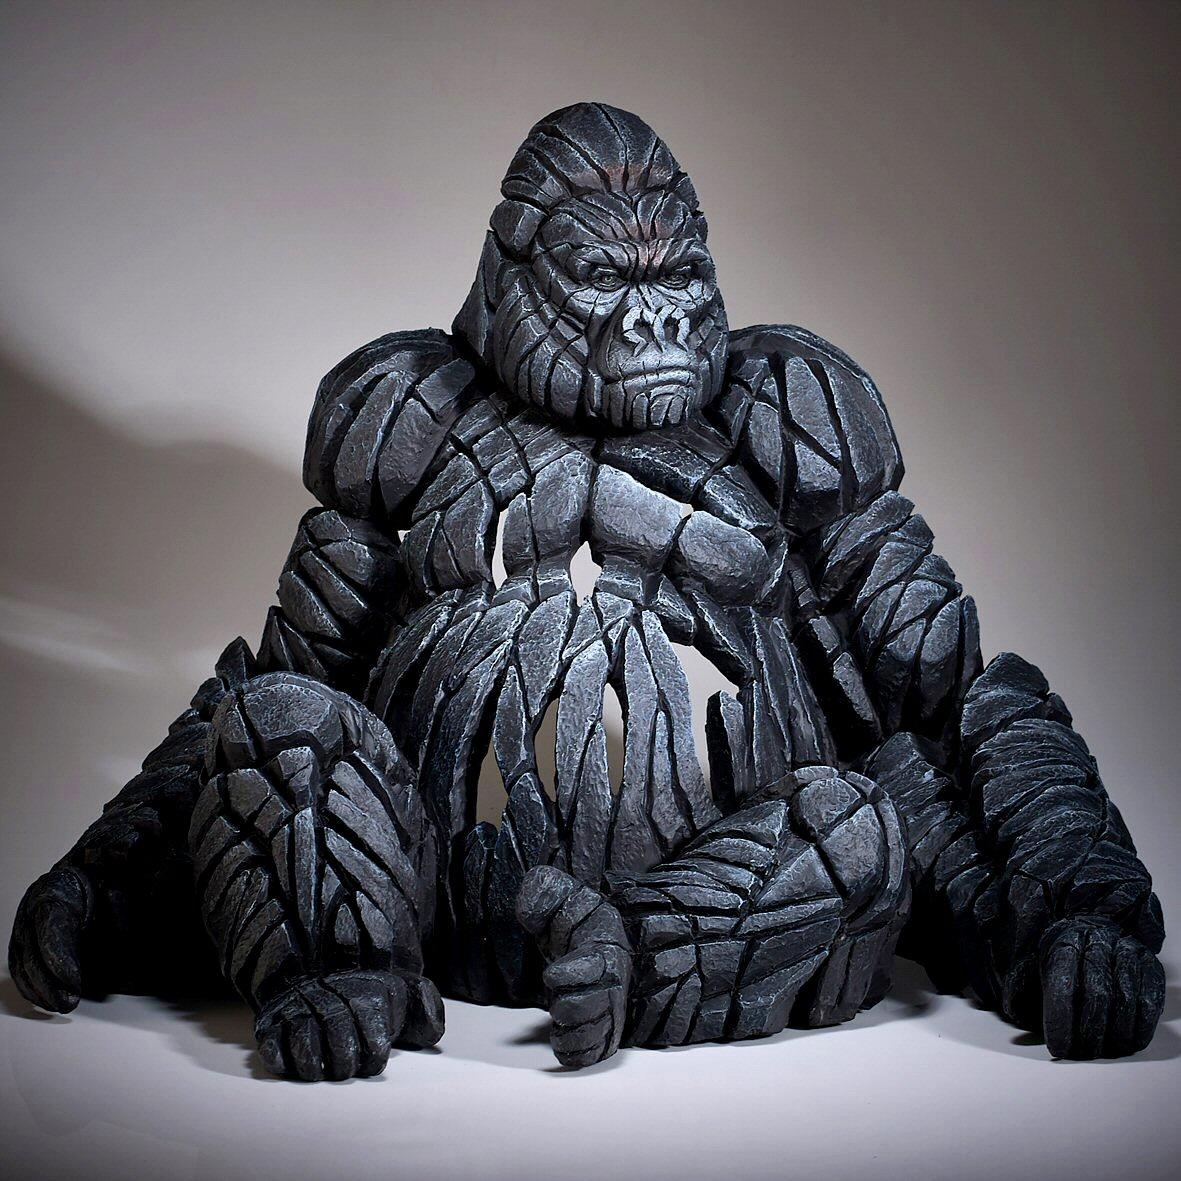 Edge Gorilla Sitting Sculpture By Matt Buckley